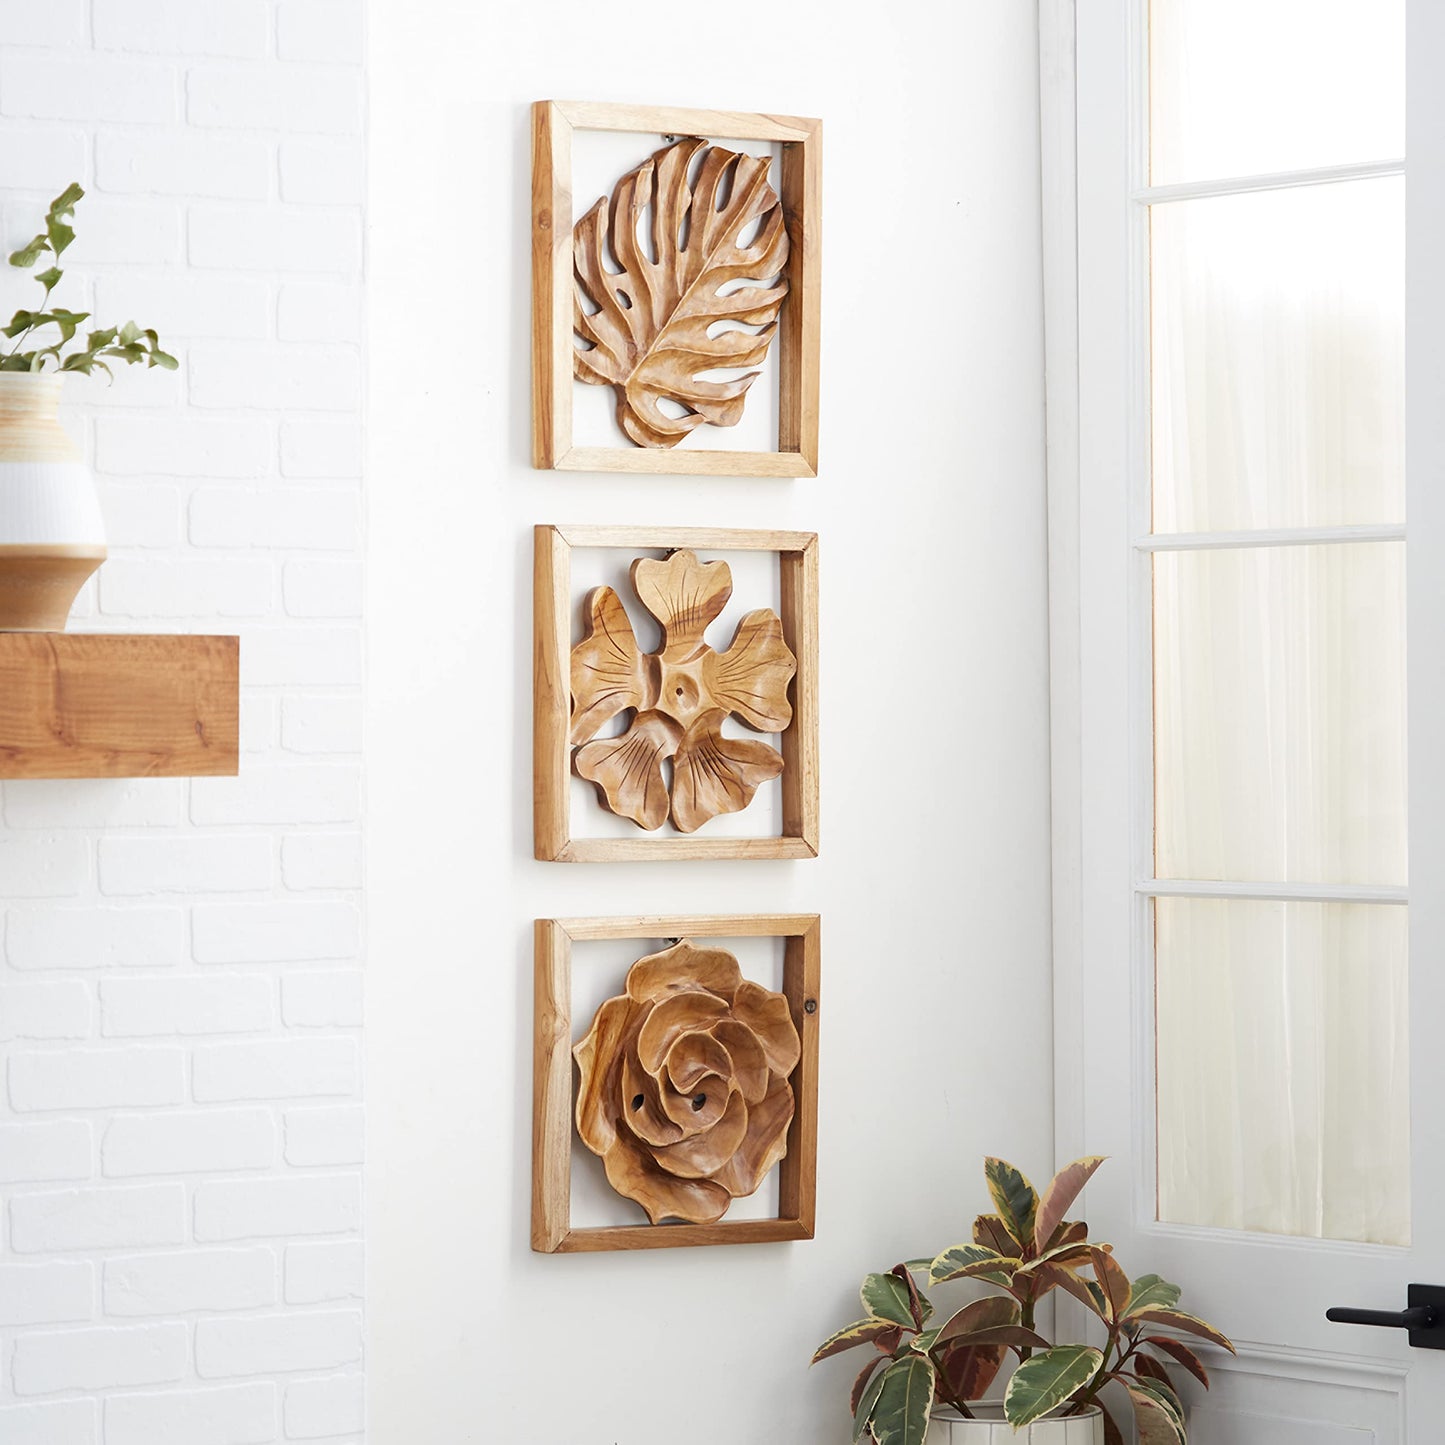 Deco 79 Teak Wood Floral Handmade Framed Carved Leaf and Wall Decor, Set of 3 14", 14", 15" W, Brown